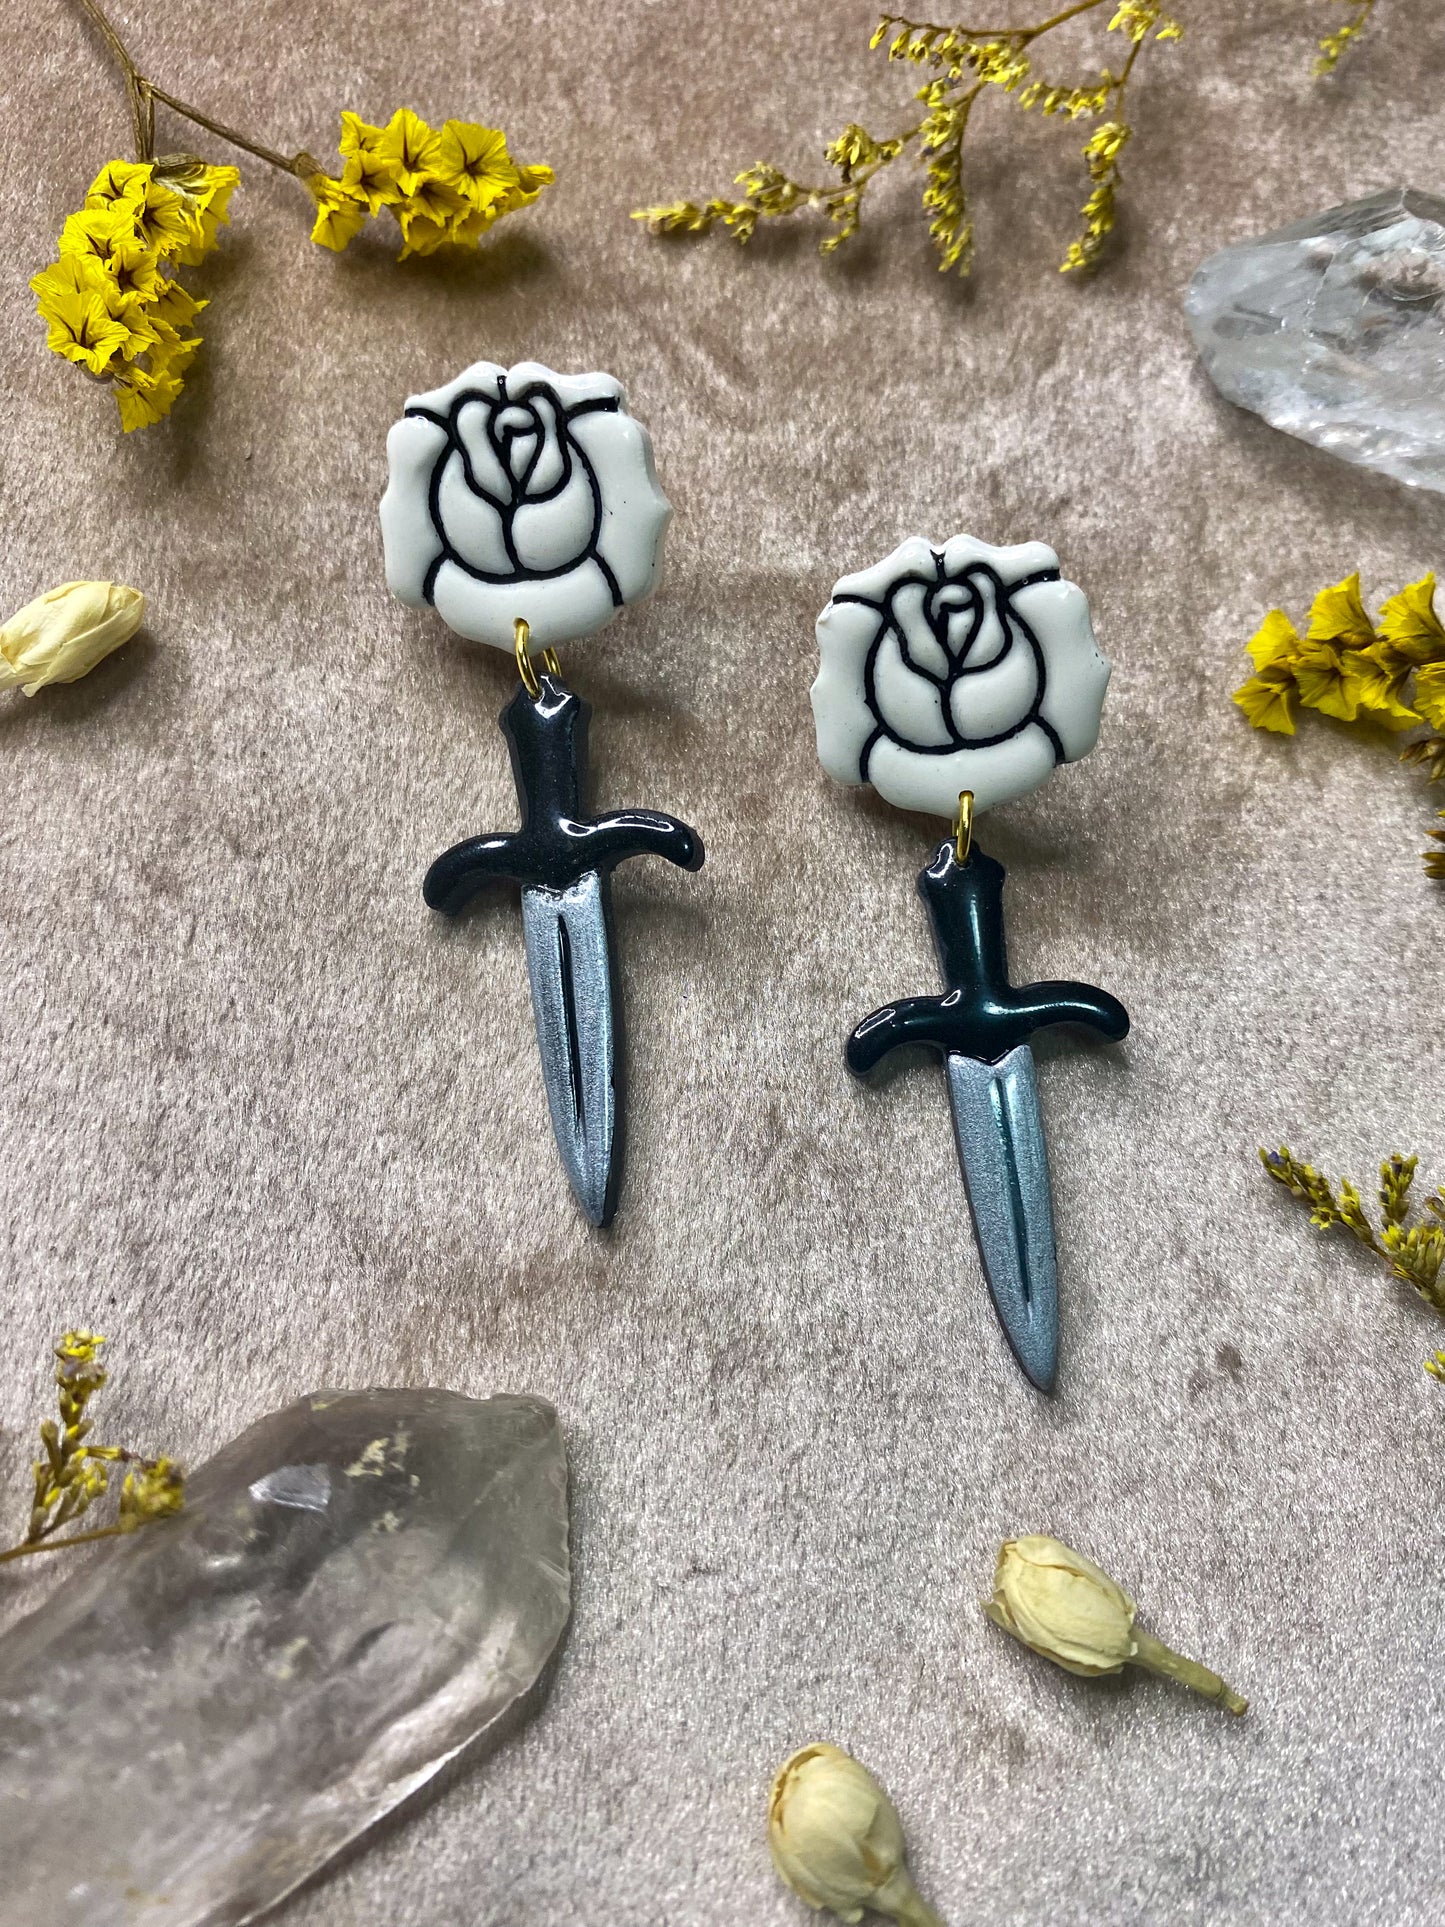 Rose + Dagger Earrings